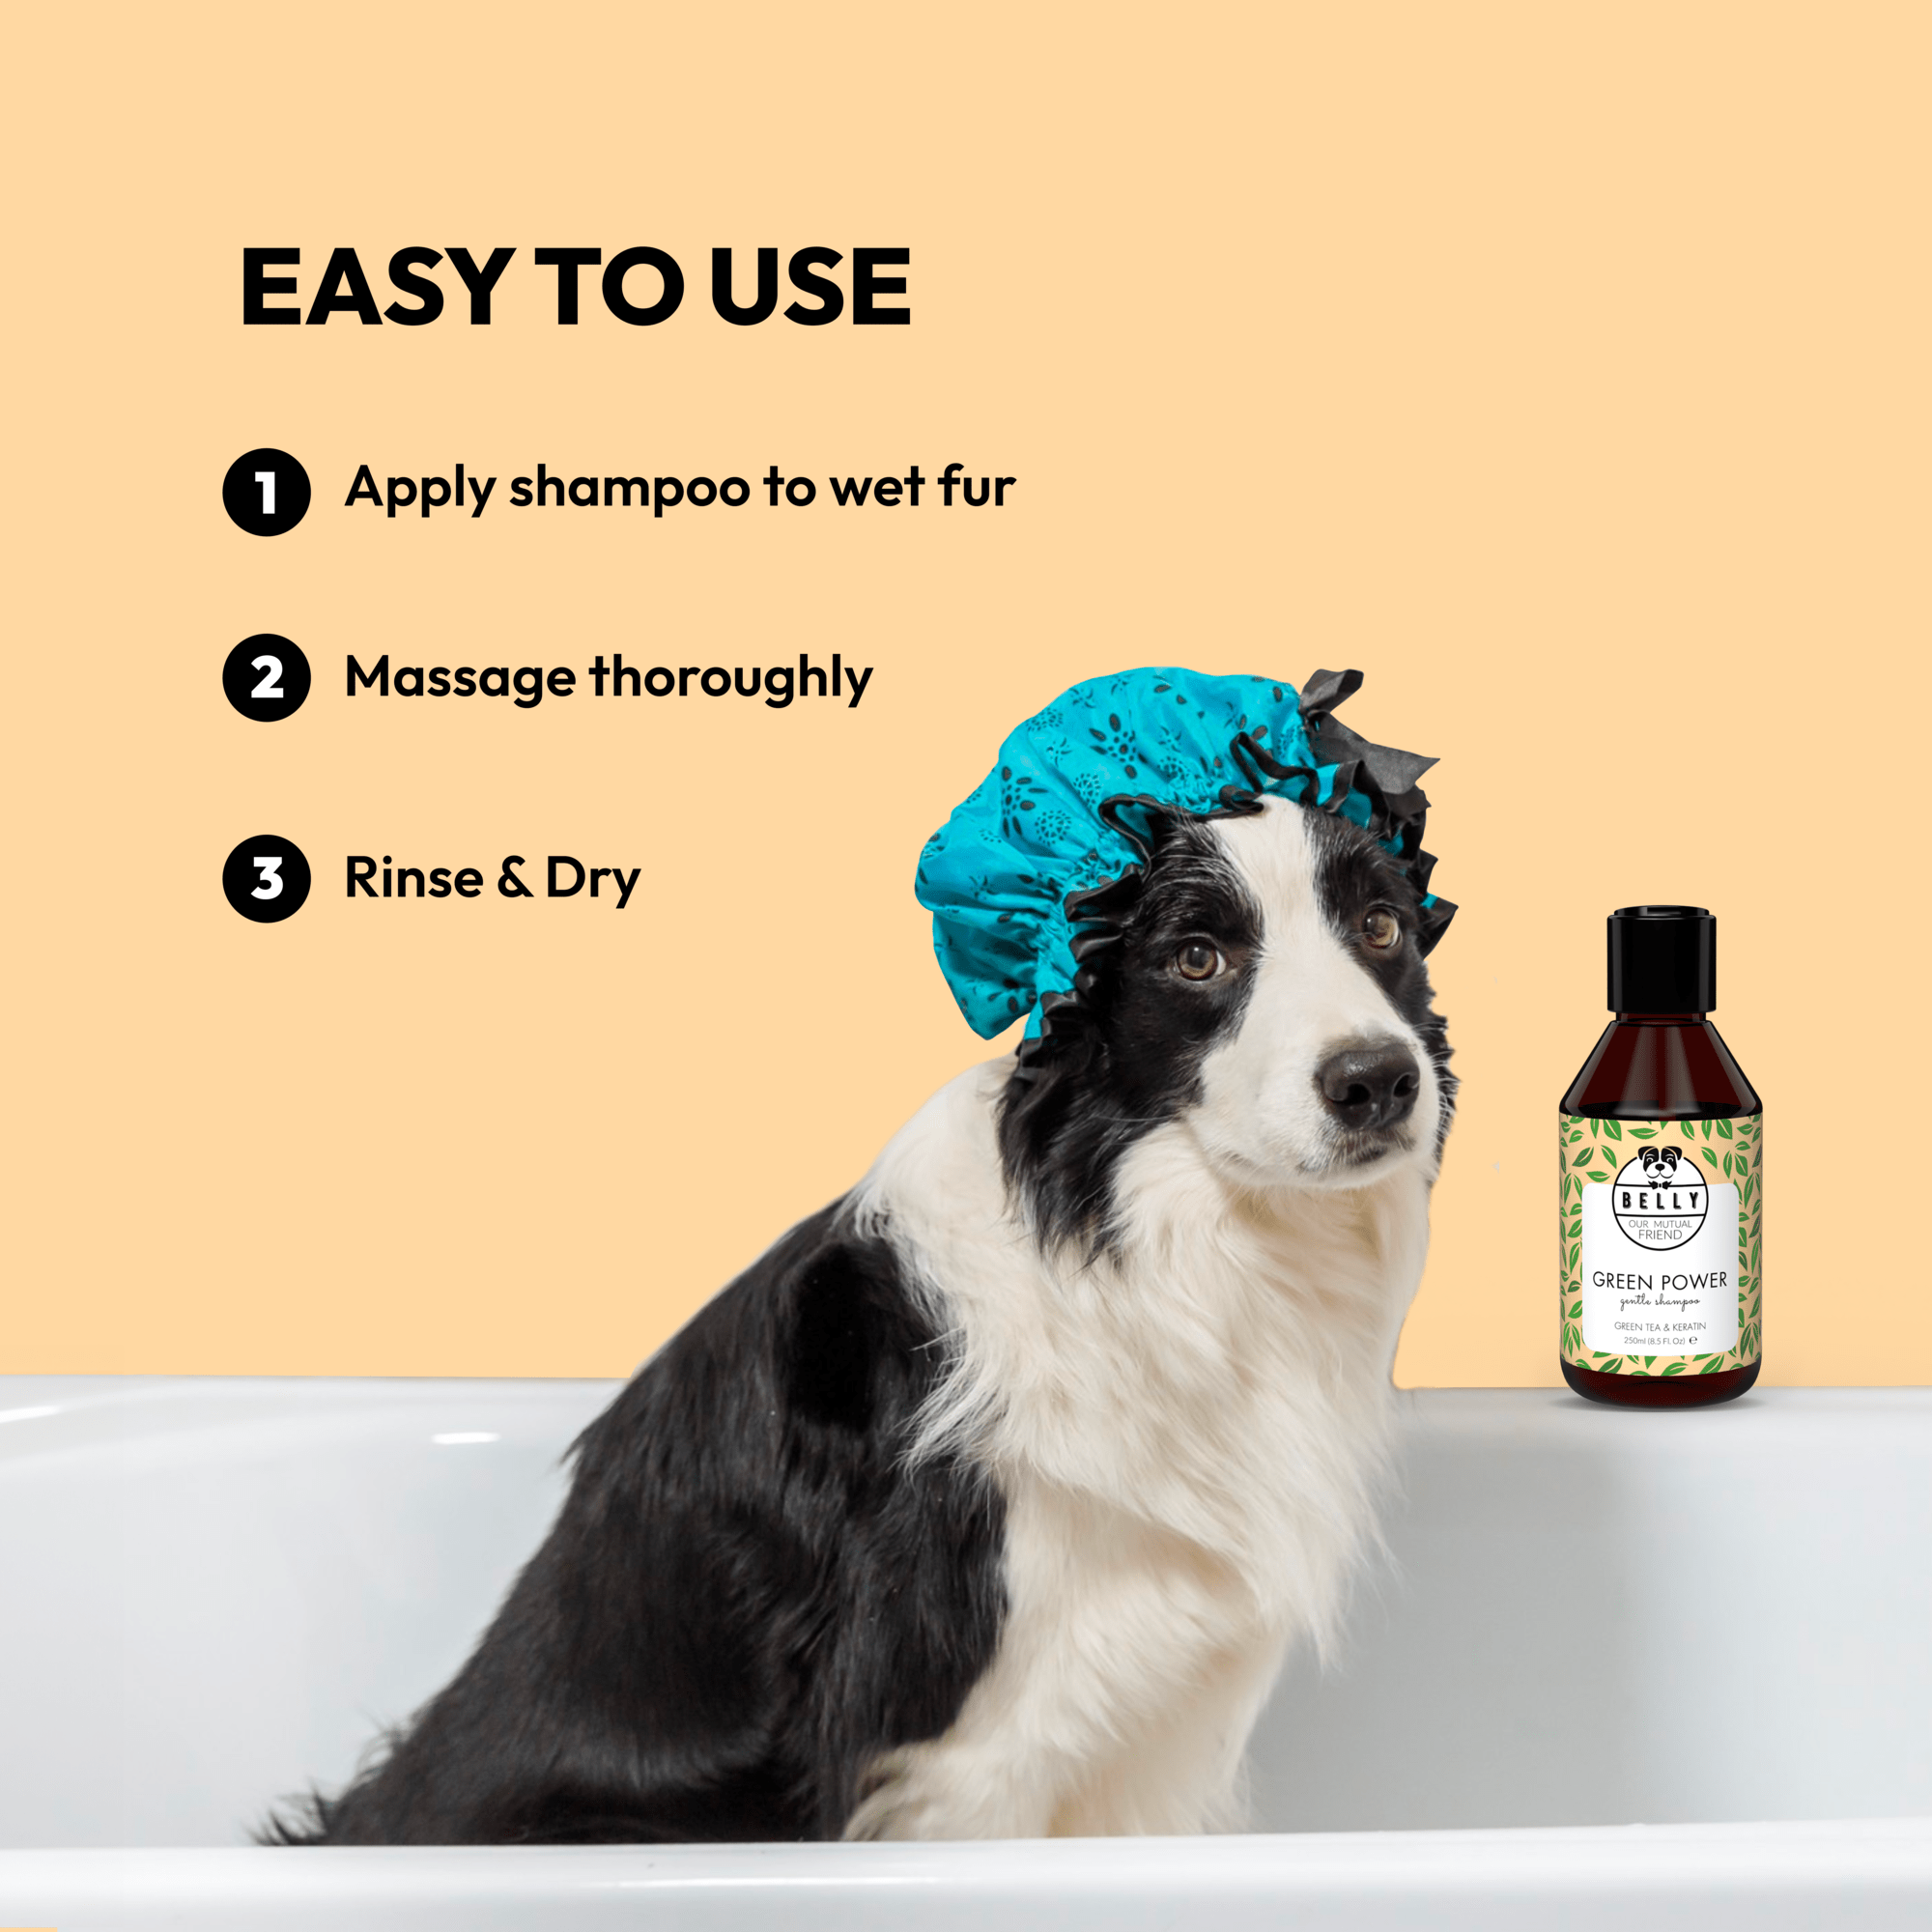 Shampoo für alle Hundefellarten